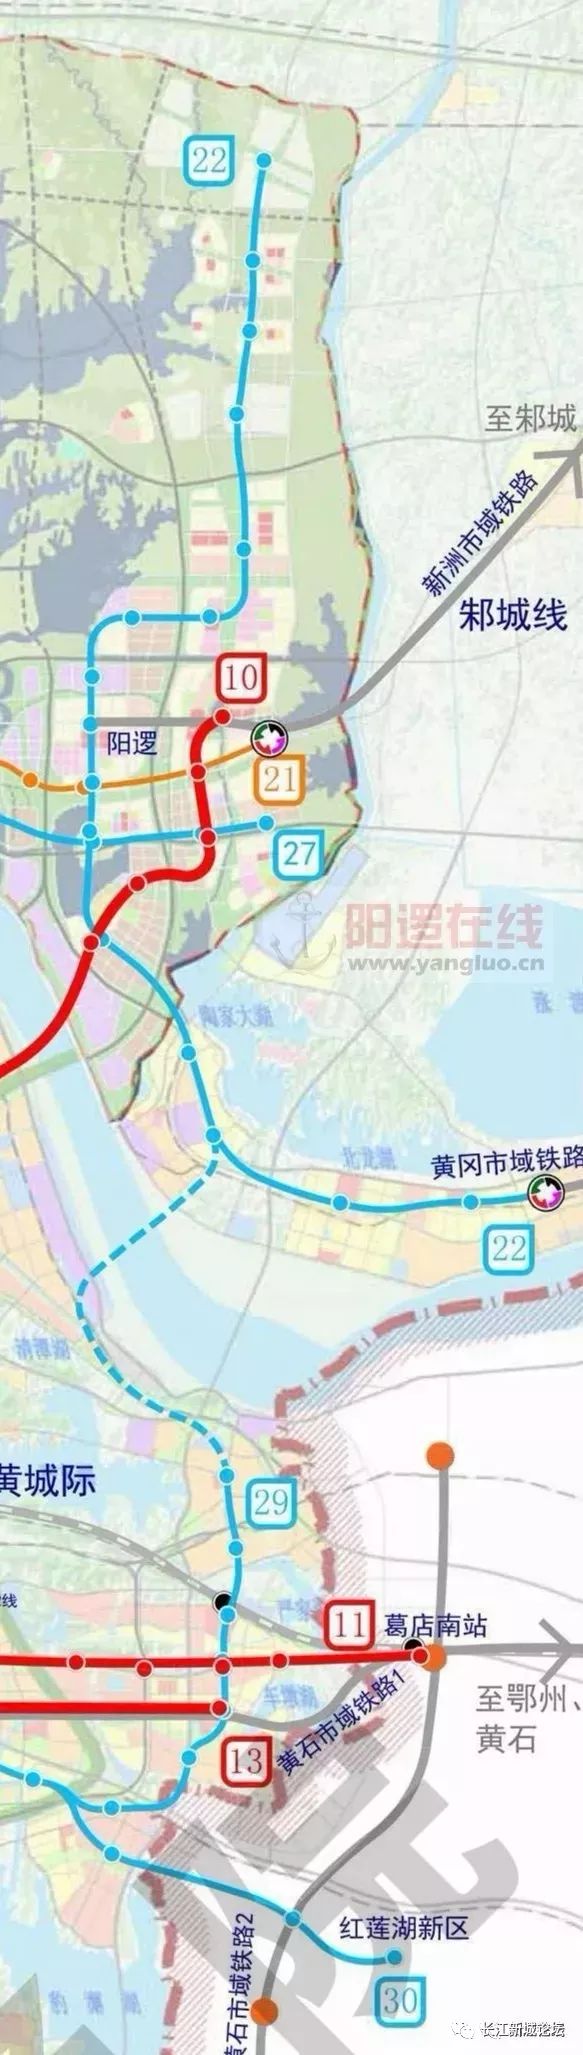 地铁22号线贯穿长江新城东部 途仓埠,阳逻,双柳,左岭  来源:武汉